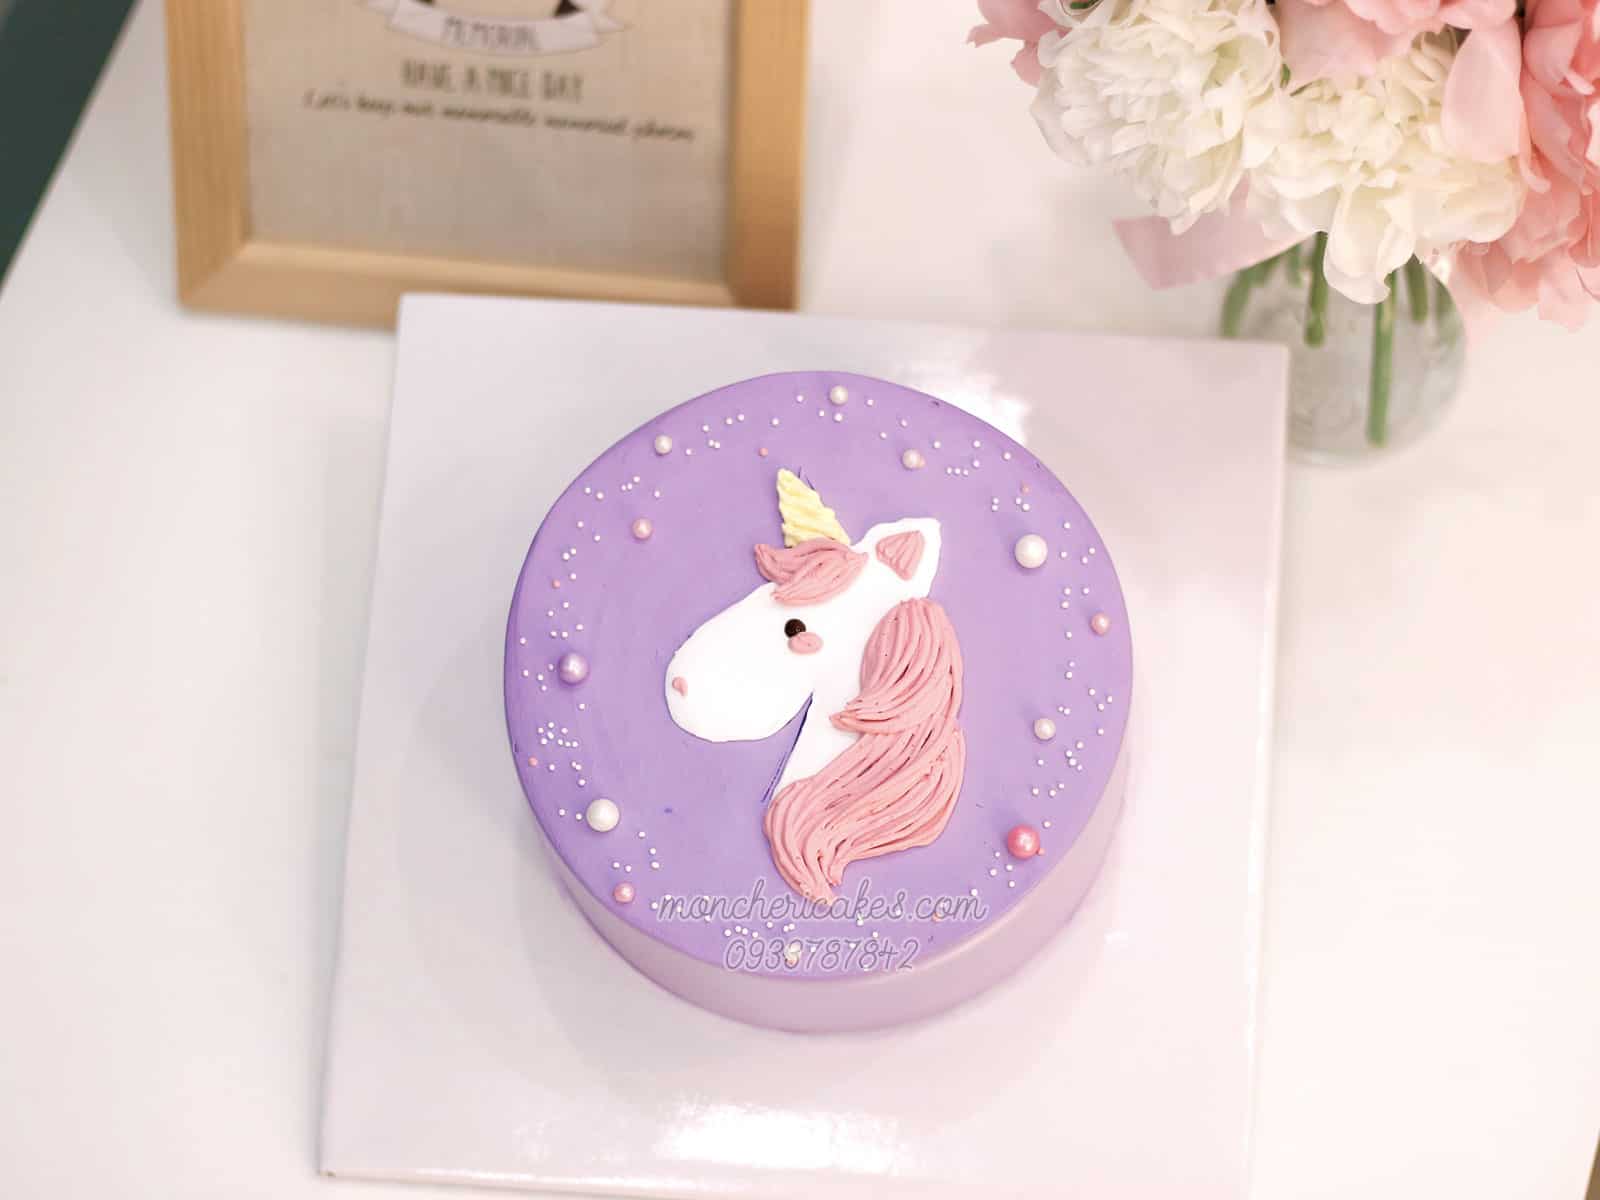 Bánh kem unicorn là biểu tượng cho sự linh hoạt và mơ mộng. Hãy tham gia xem hình ảnh này để nhận được một cú sốc ngọt ngào khi nhìn thấy những chú kỳ lân xinh đẹp được sánh đôi cùng lớp kem mousse mịn màng.